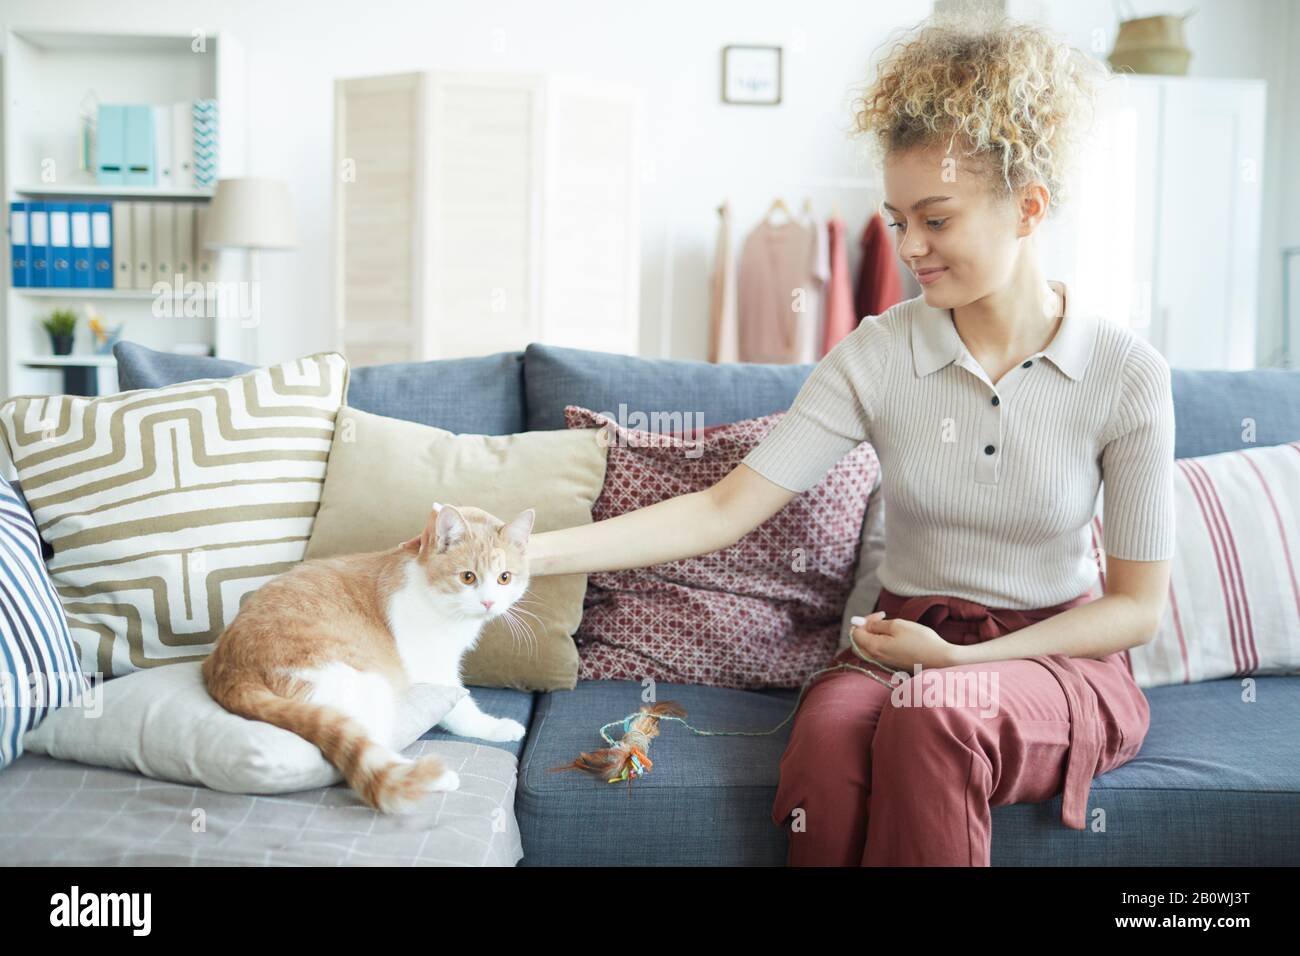 Junge Frau in legerer Kleidung, die während ihres Spiels zu Hause auf dem Sofa sitzt und Hauskatze streichelt Stockfoto